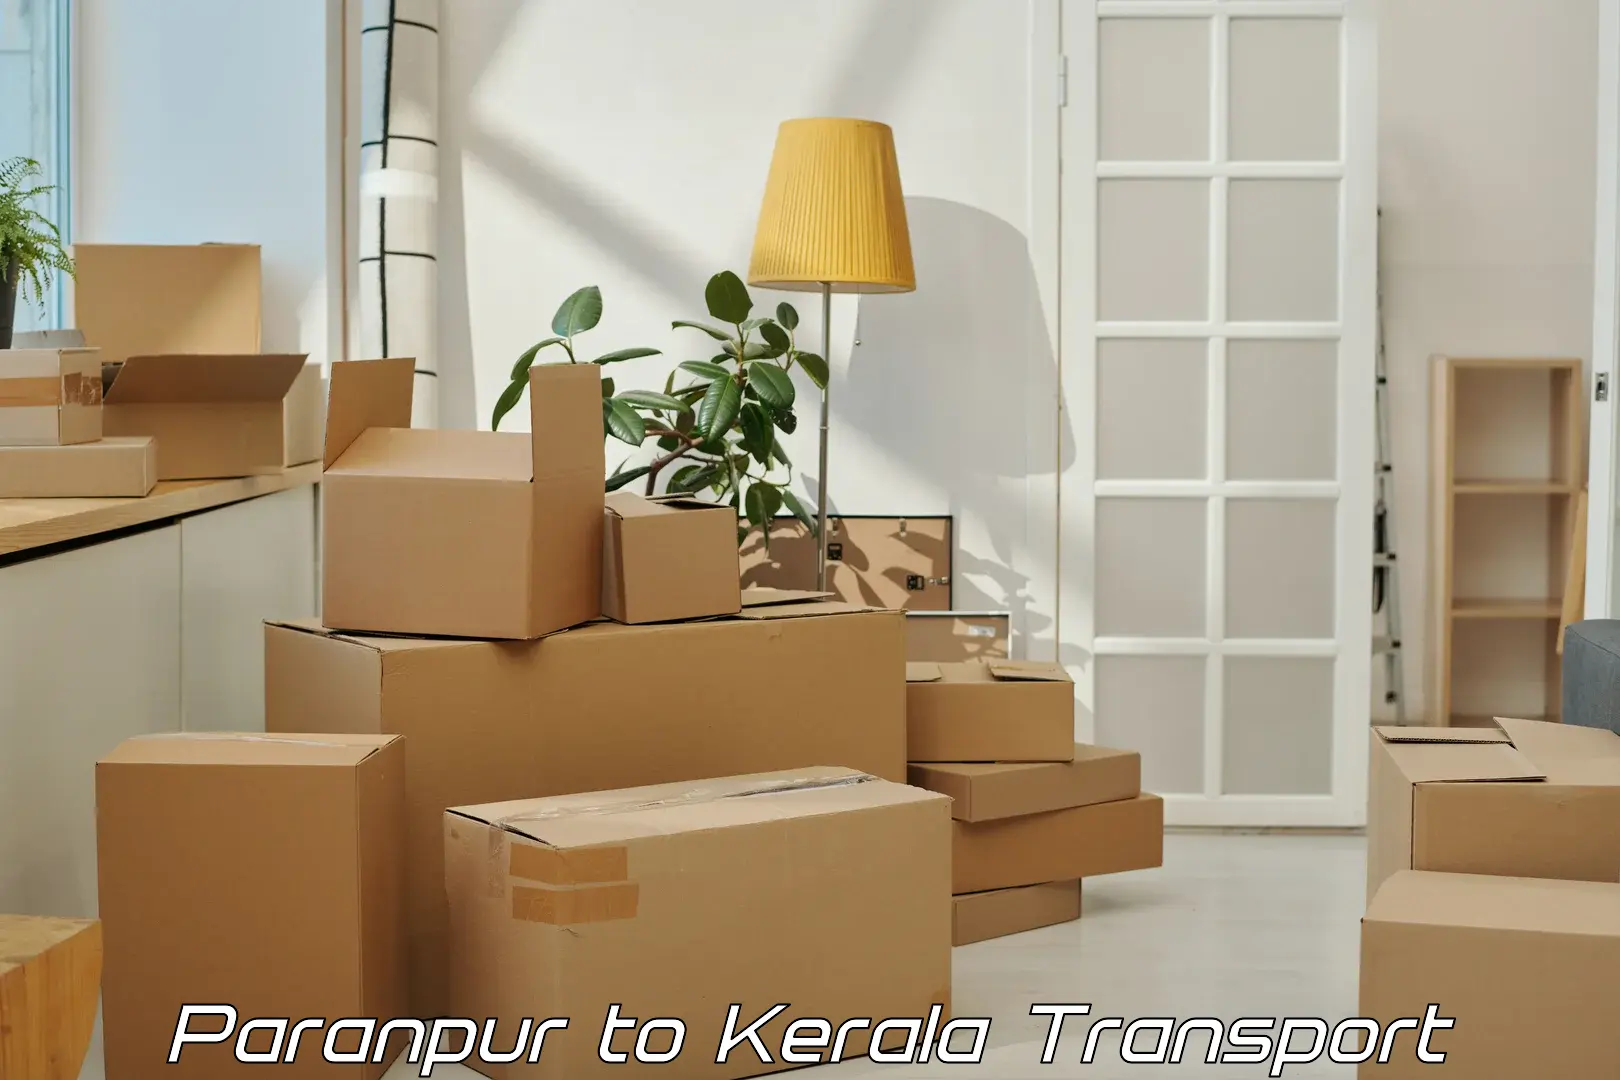 Furniture transport service Paranpur to Kanhangad